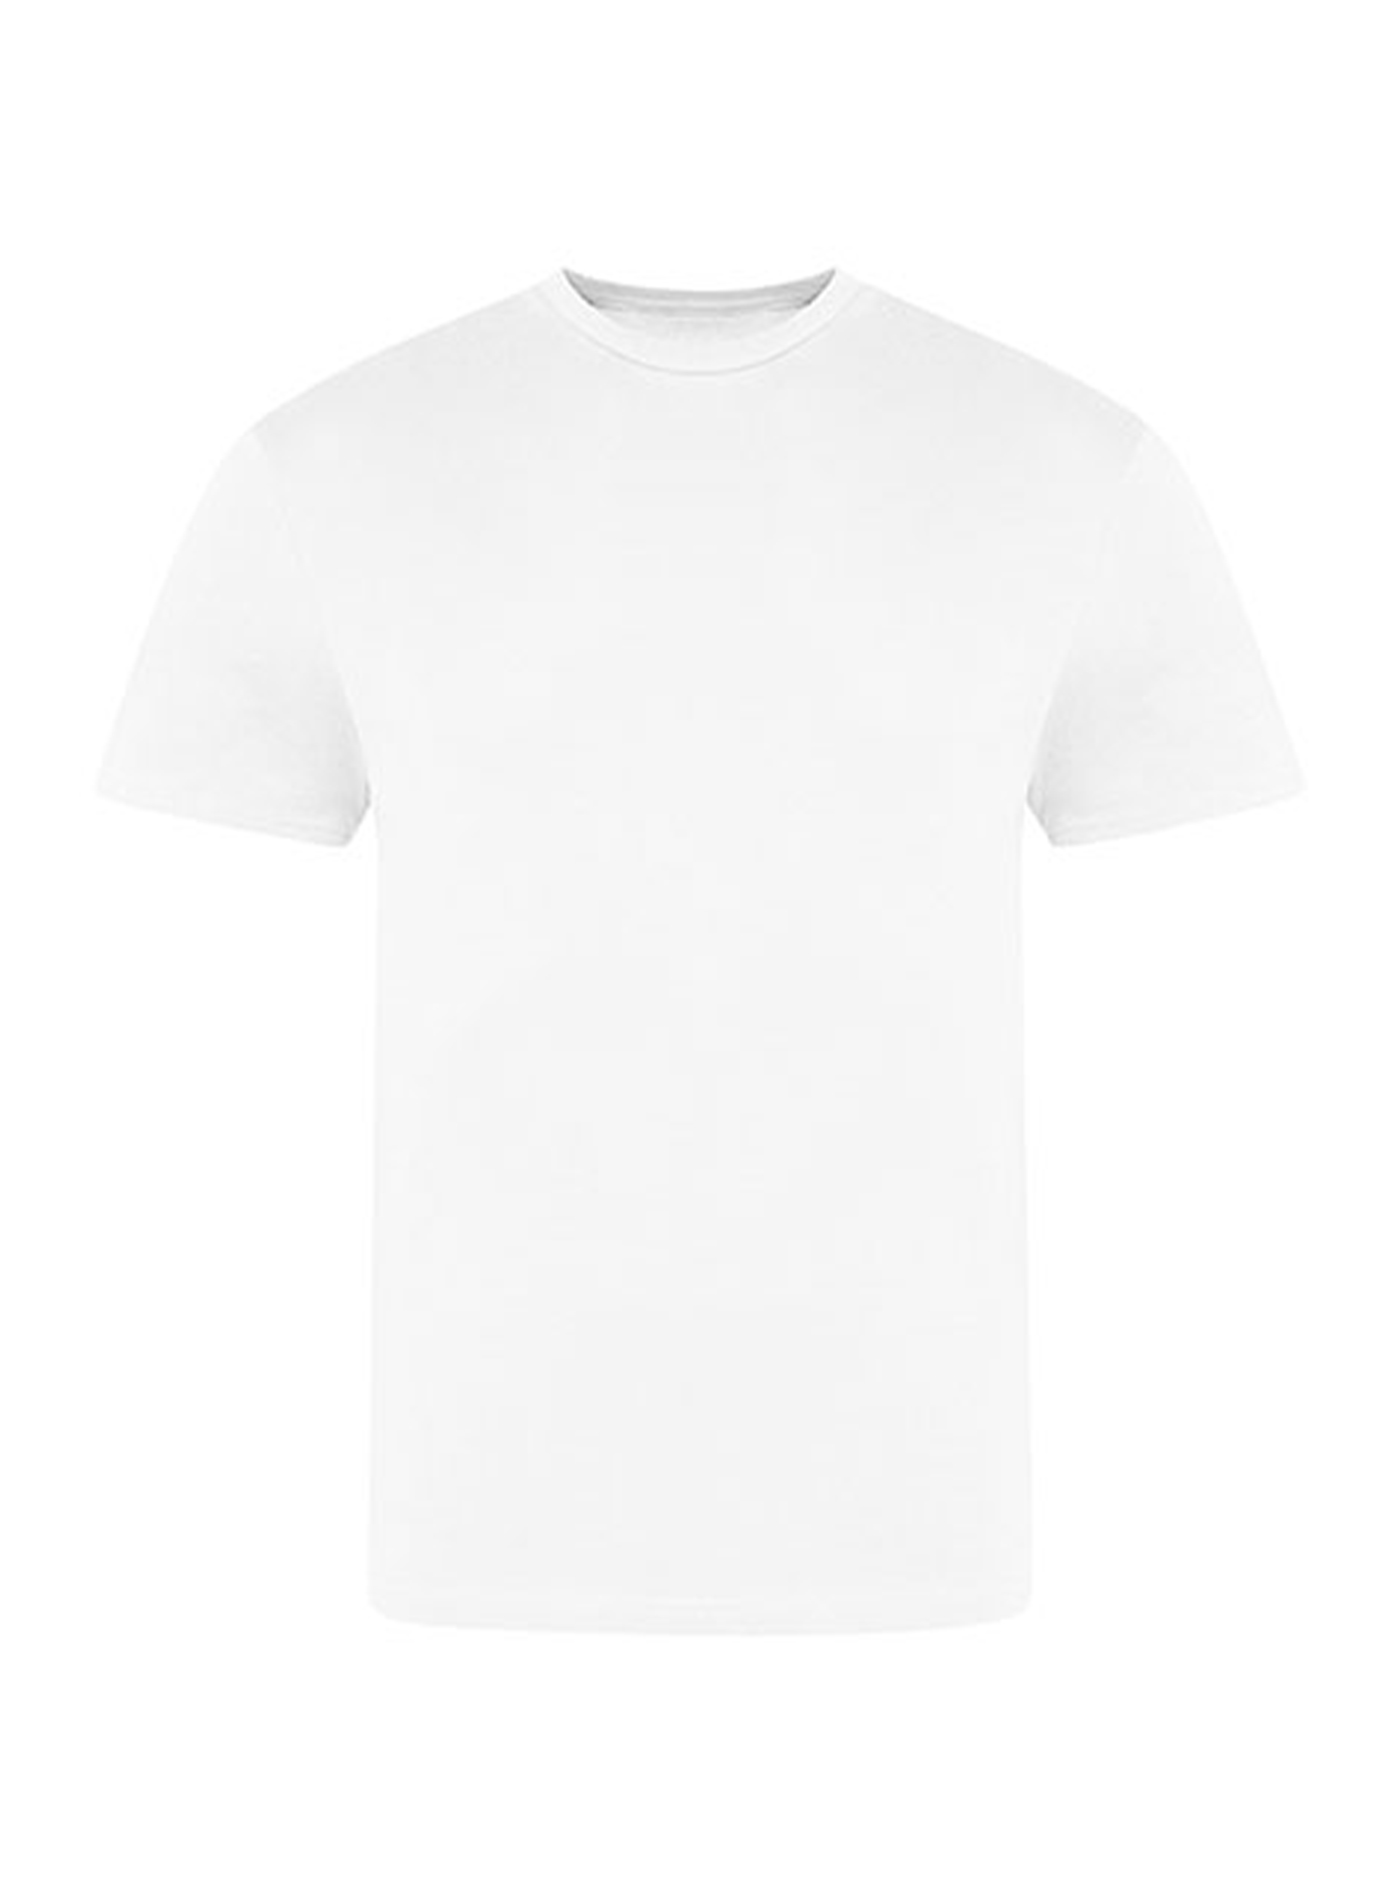 Pánské tričko Just Ts - Bílá XXL